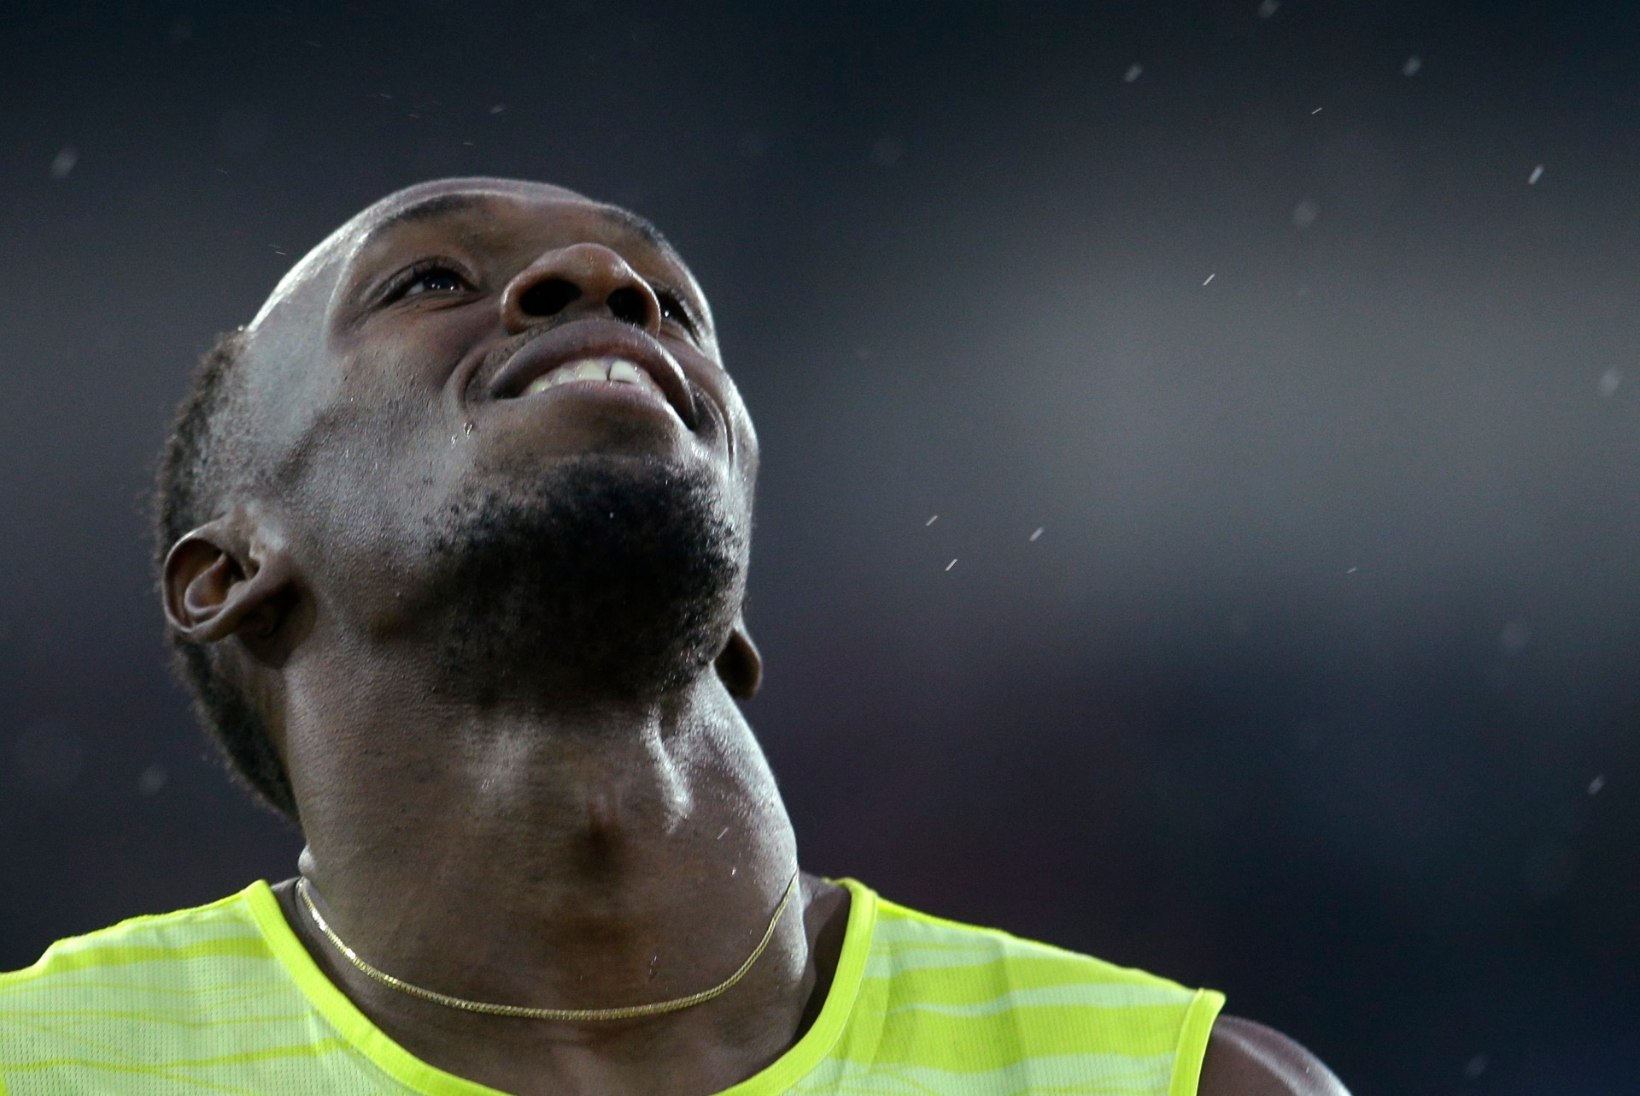 Ostravas võidutsenud Usain Bolti aeg jäi tagasihoidlikuks